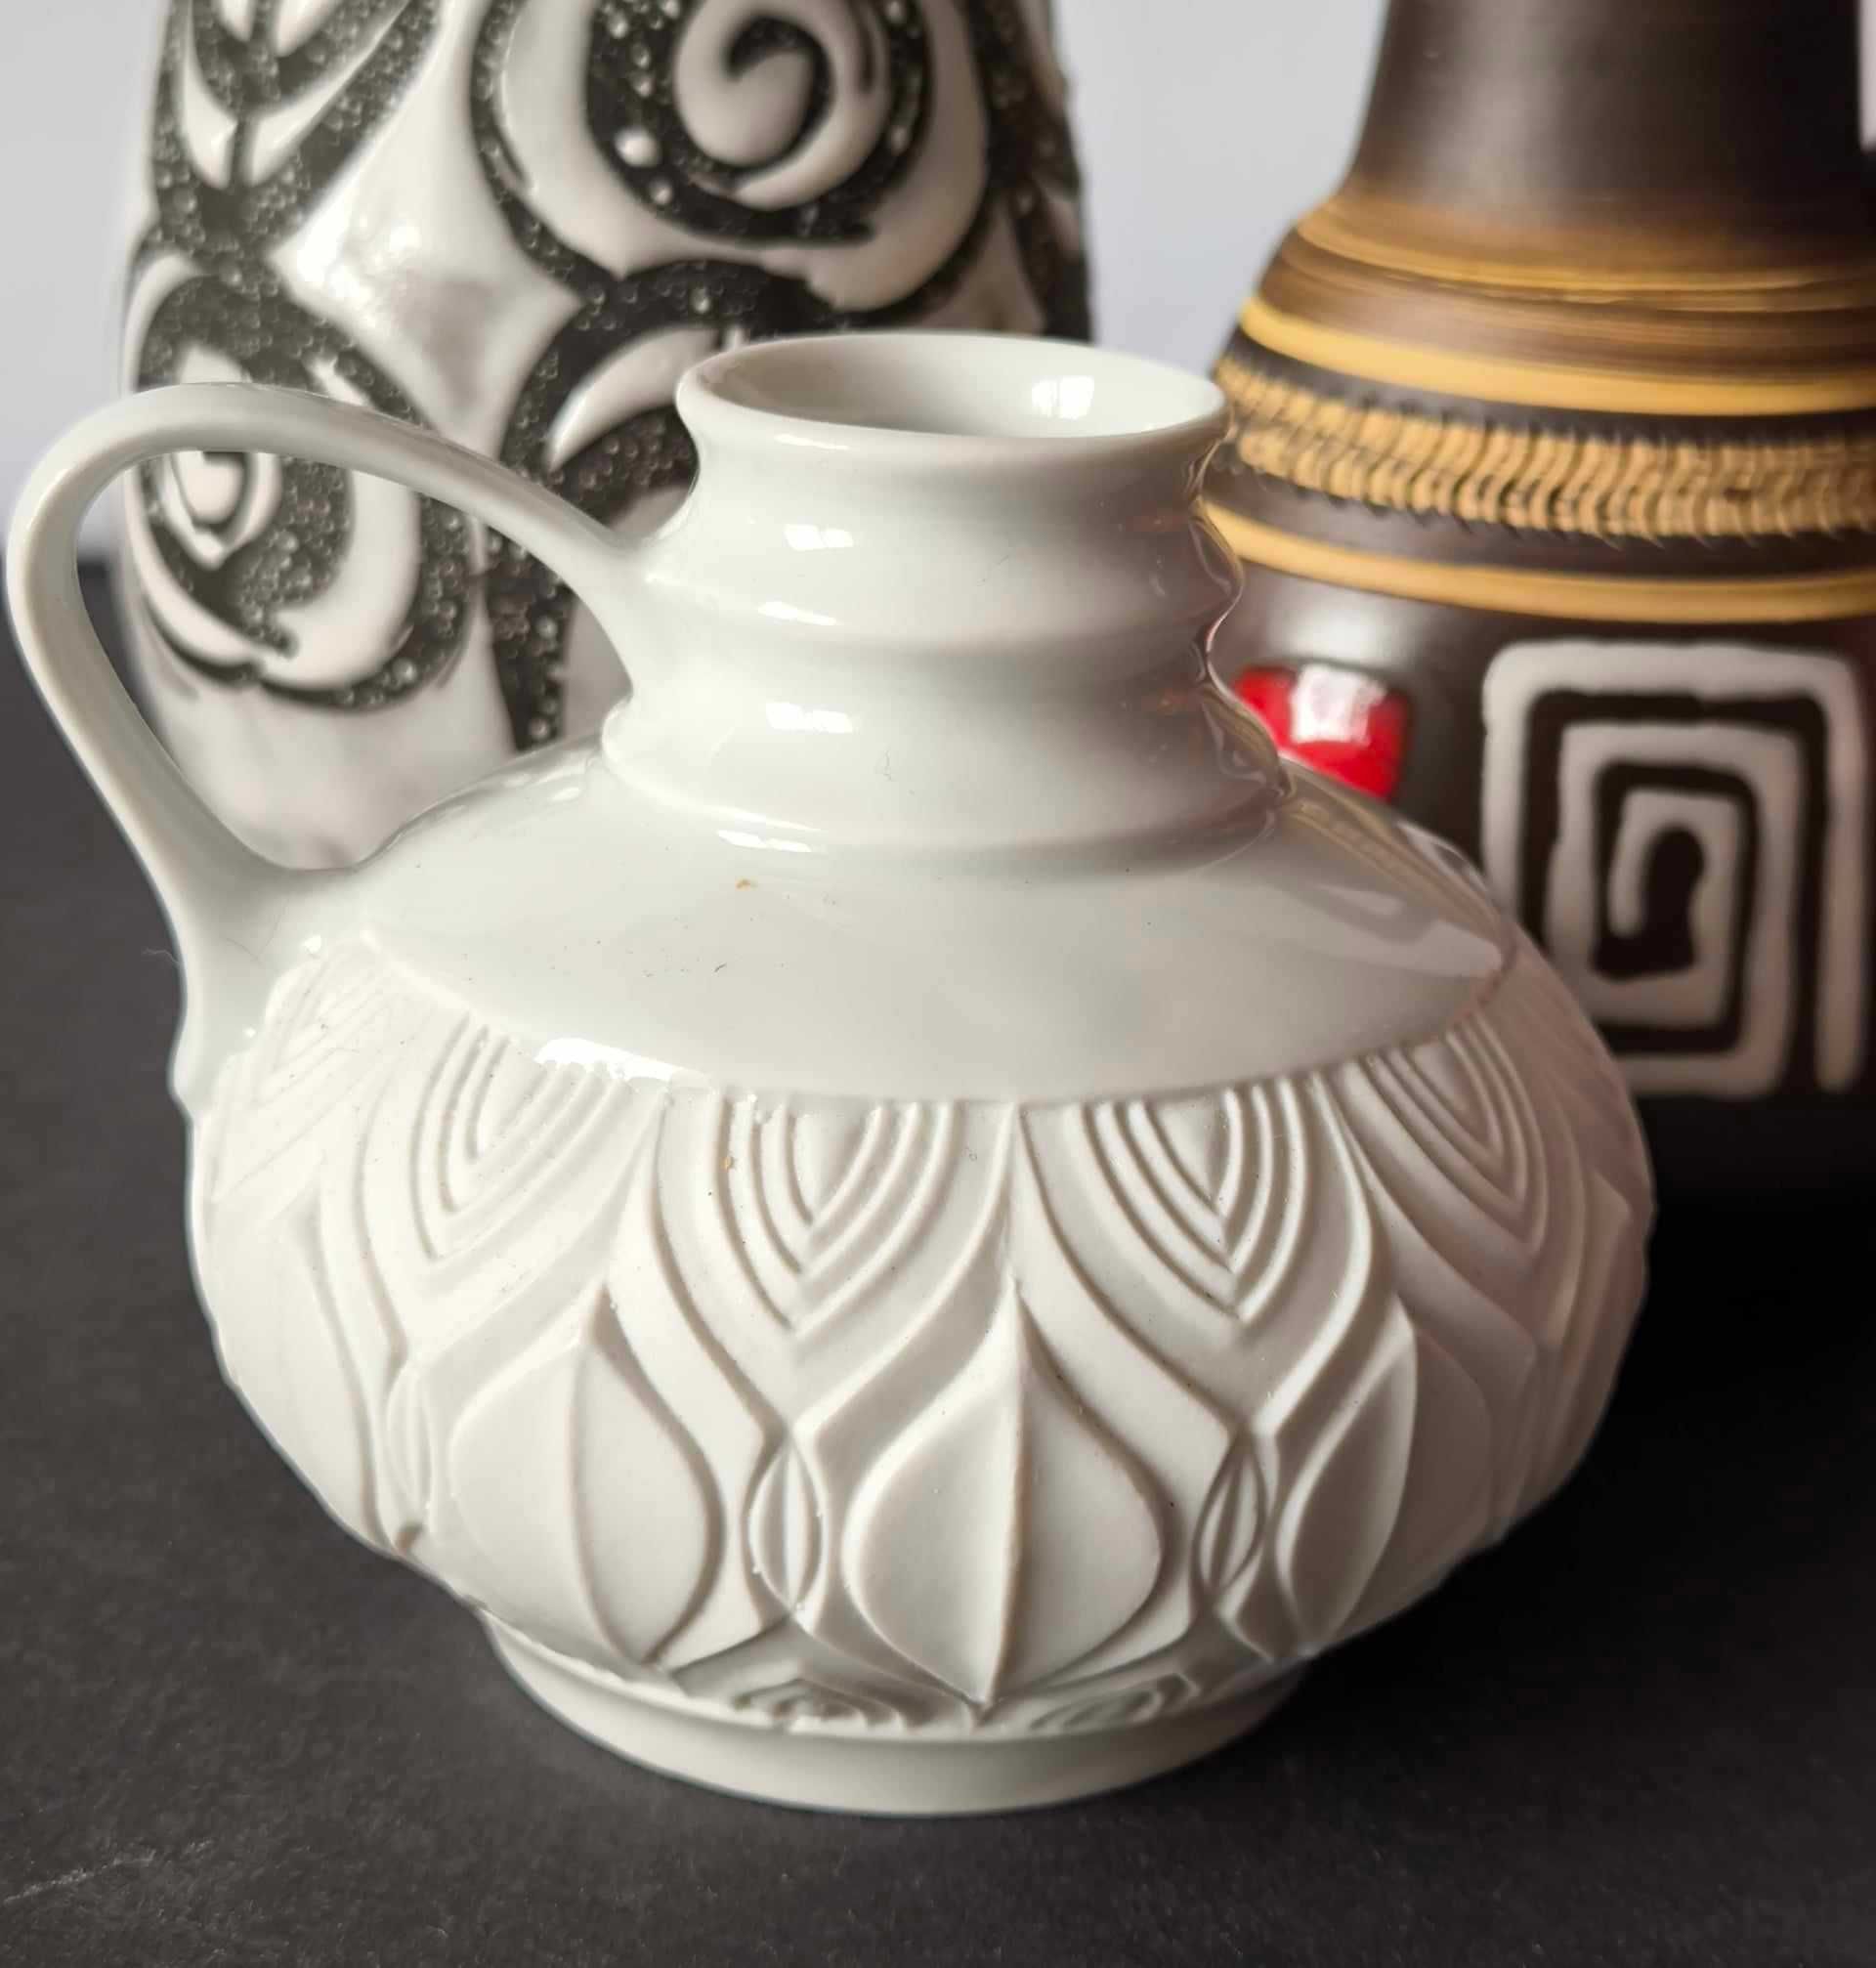 Stara porcelana wazon biskwit szkliwiony częściowo Design WGP